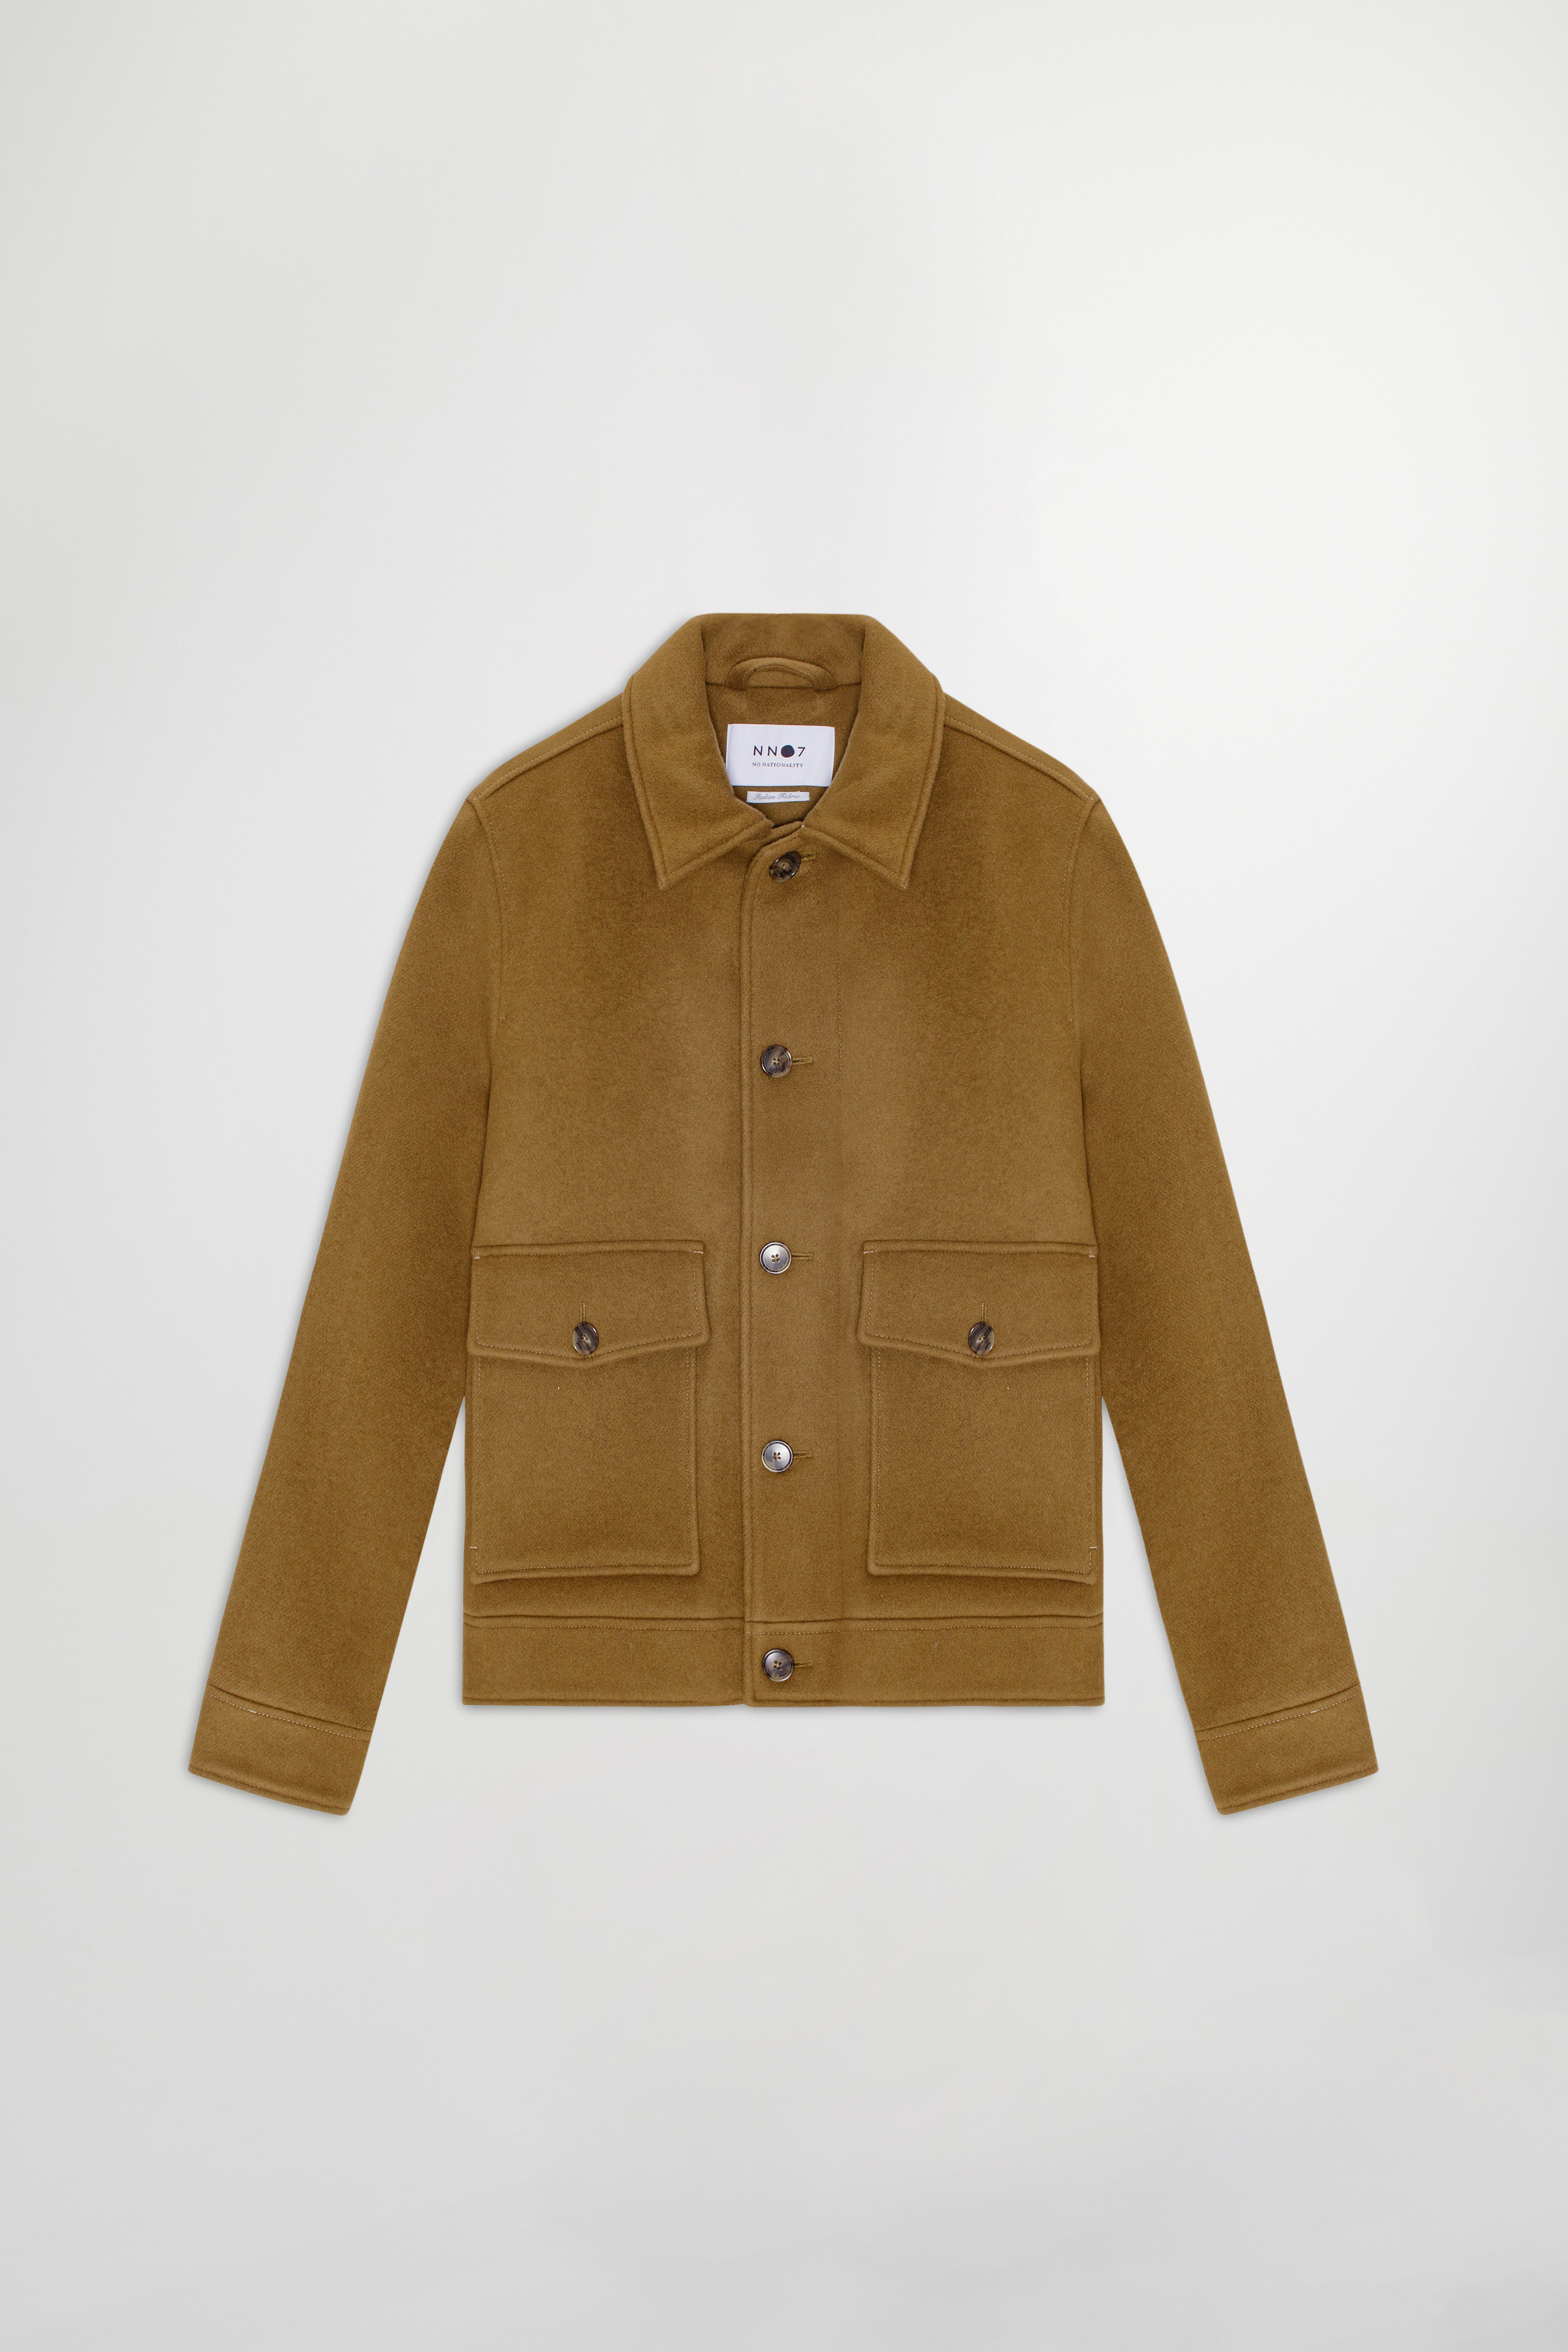 Julius 8268 men's jacket - Brown - Buy online at NN.07®